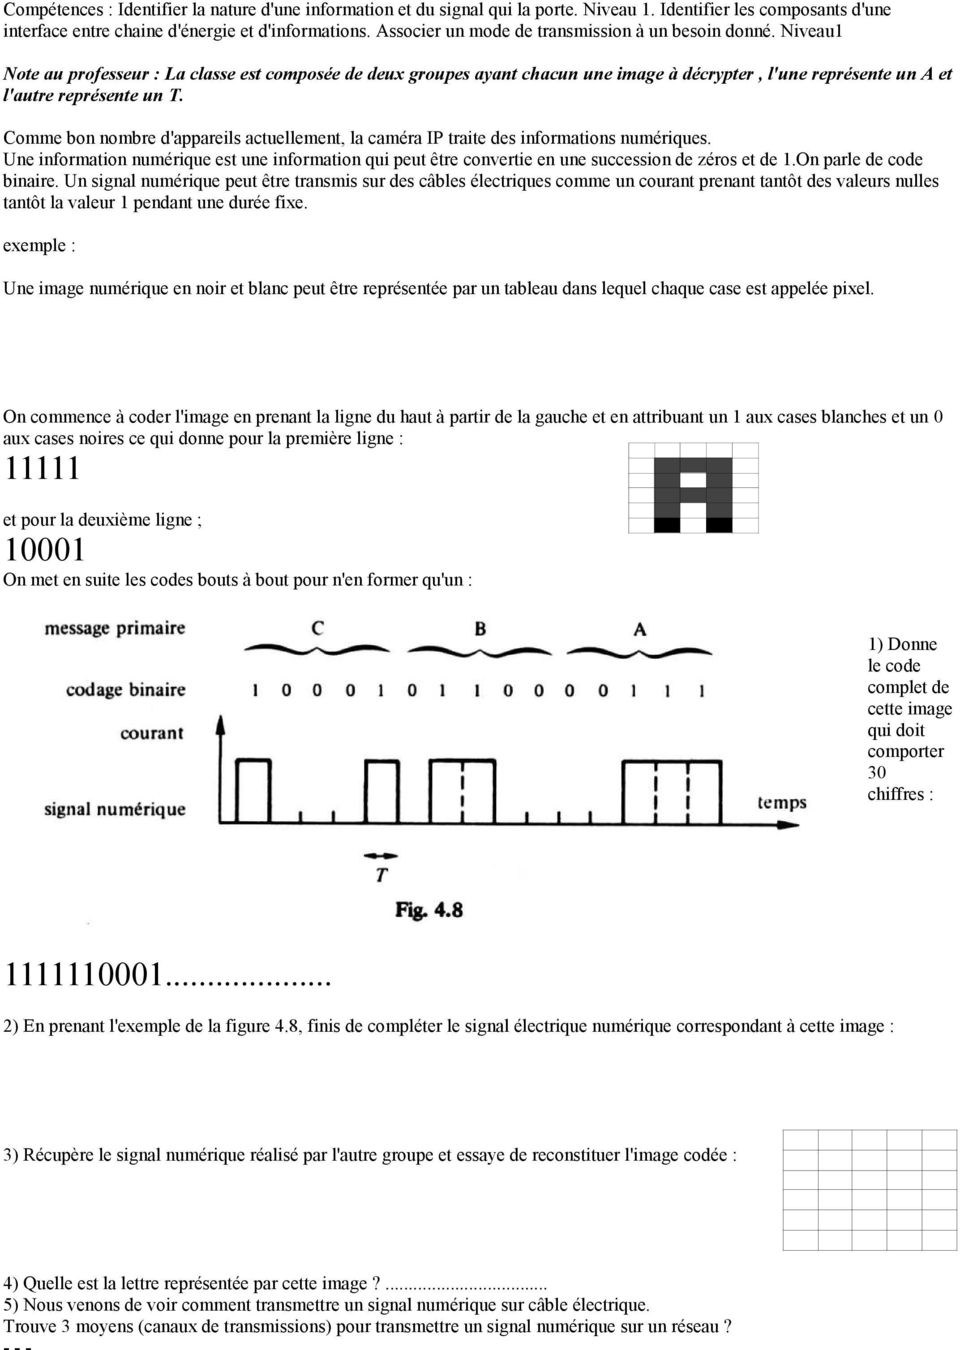 Niveau1 Note au professeur : La classe est composée de deux groupes ayant chacun une image à décrypter, l'une représente un A et l'autre représente un T.